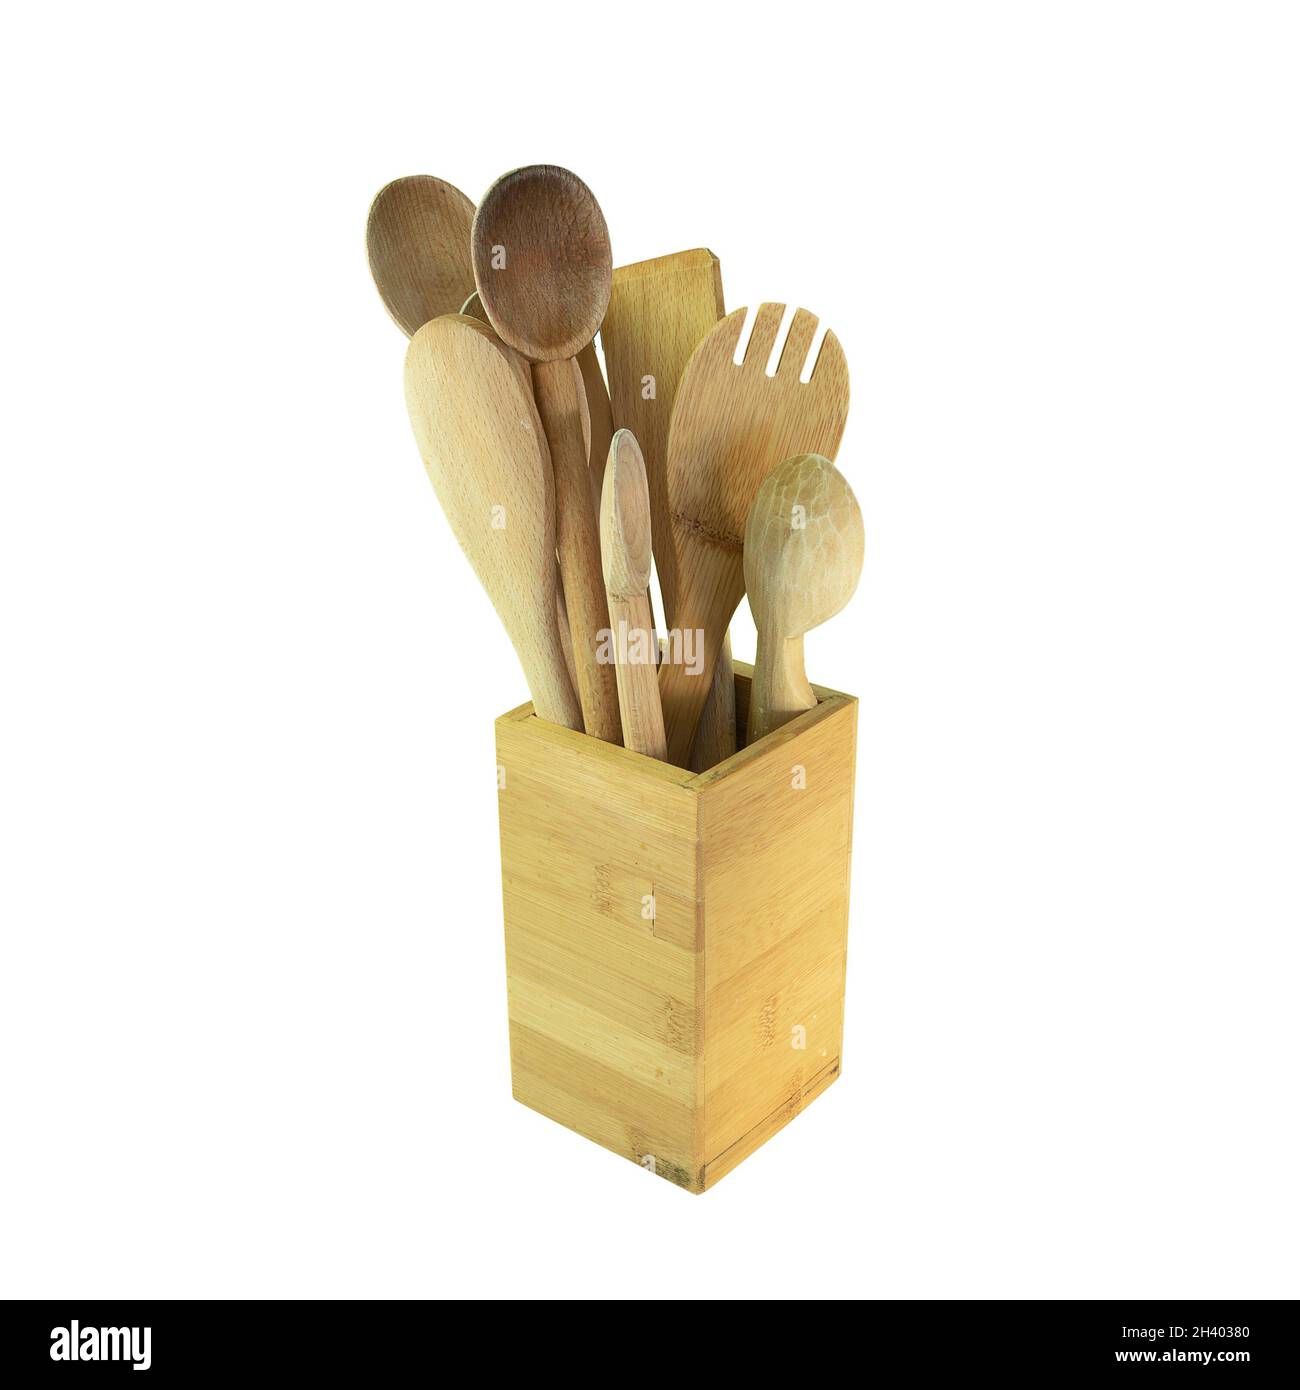 colección de cucharas de madera y utensilios de cocina aislados sobre fondo blanco Foto de stock